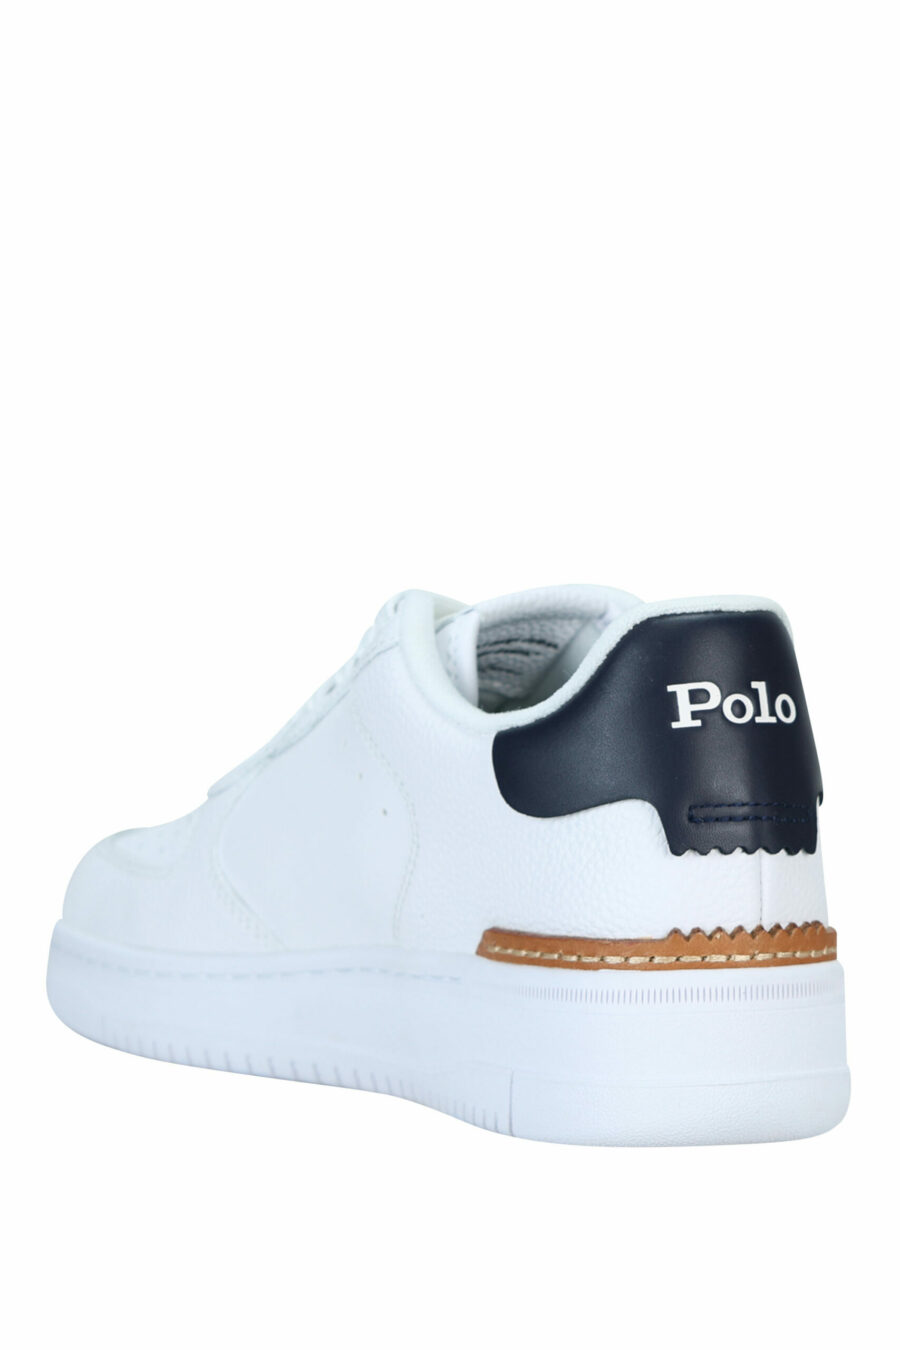 Formateurs blancs avec logo "polo" bleu et marron avec logo "polo" blanc - 3616850384770 2 à l'échelle